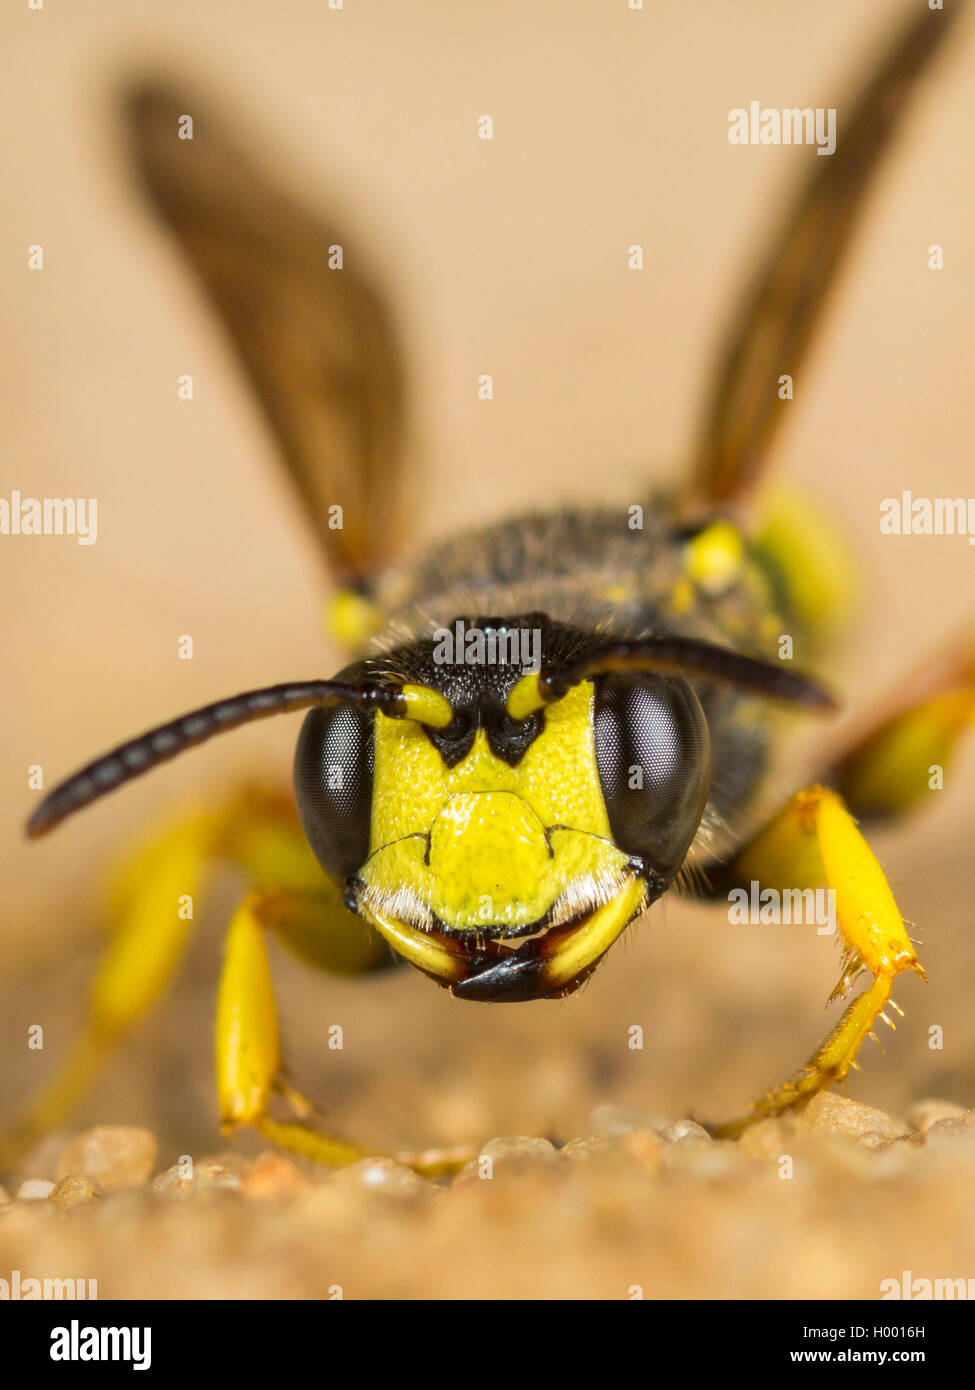 Queue ornée Digger Wasp (Cerceris rybyensis), Femme assise sur un sol sableux, Allemagne Banque D'Images